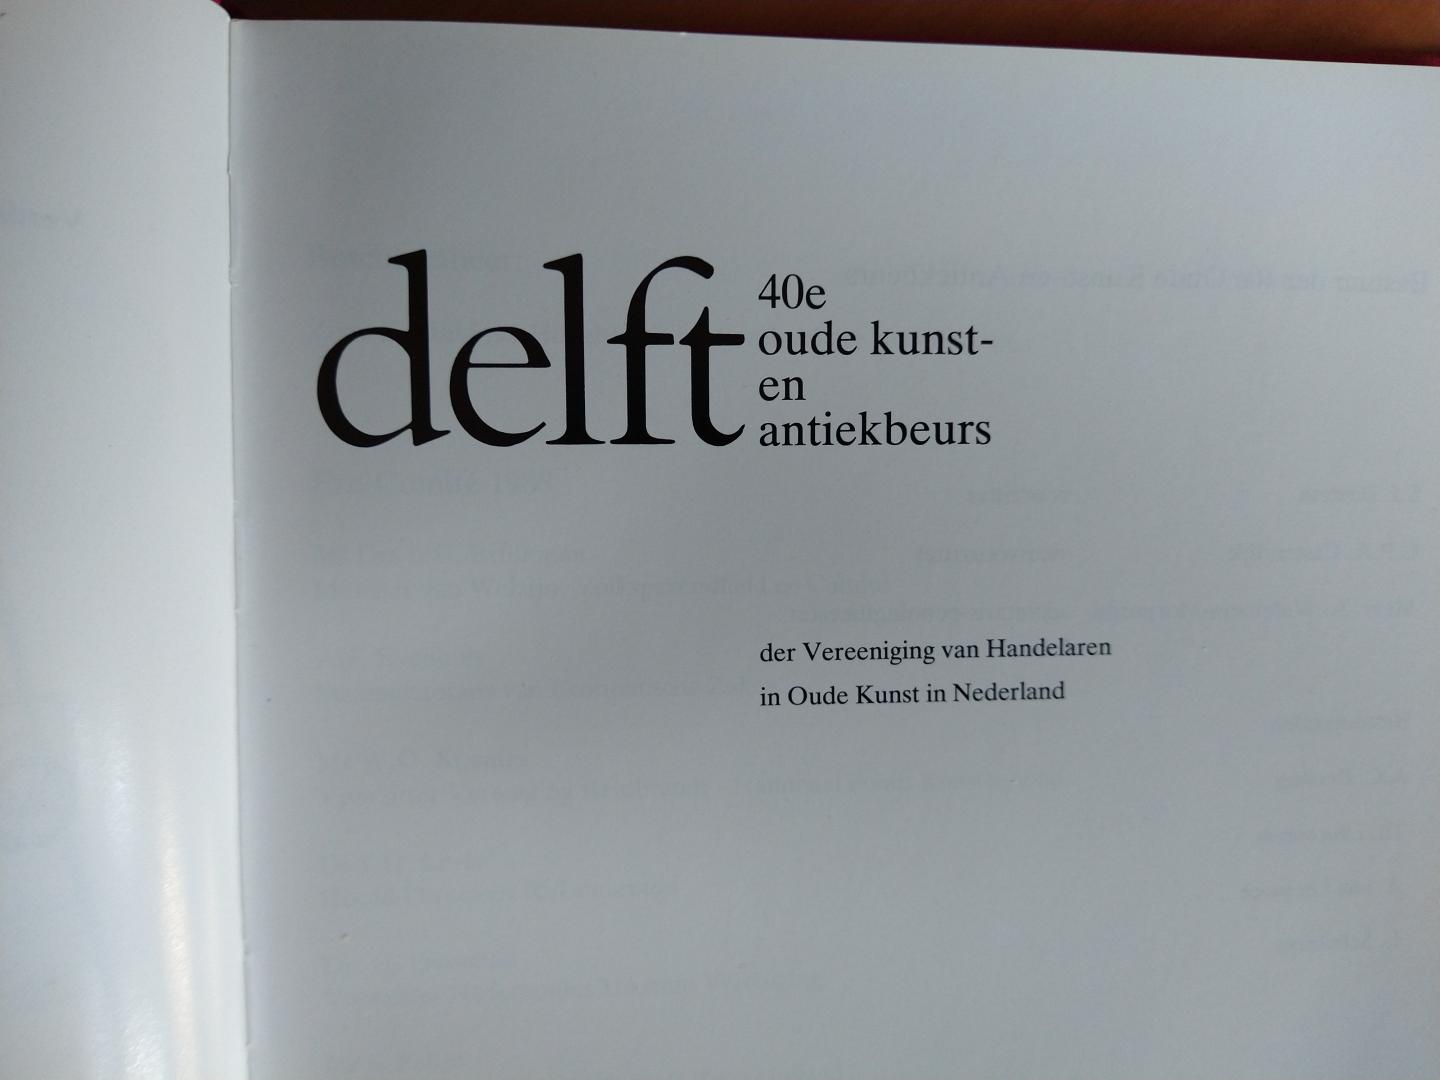 Redactie - 40e Oude kunst- en antiekbeurs der Vereeniging van Handelaren n Oude Kunst in Nederland te Delft oktober 1988